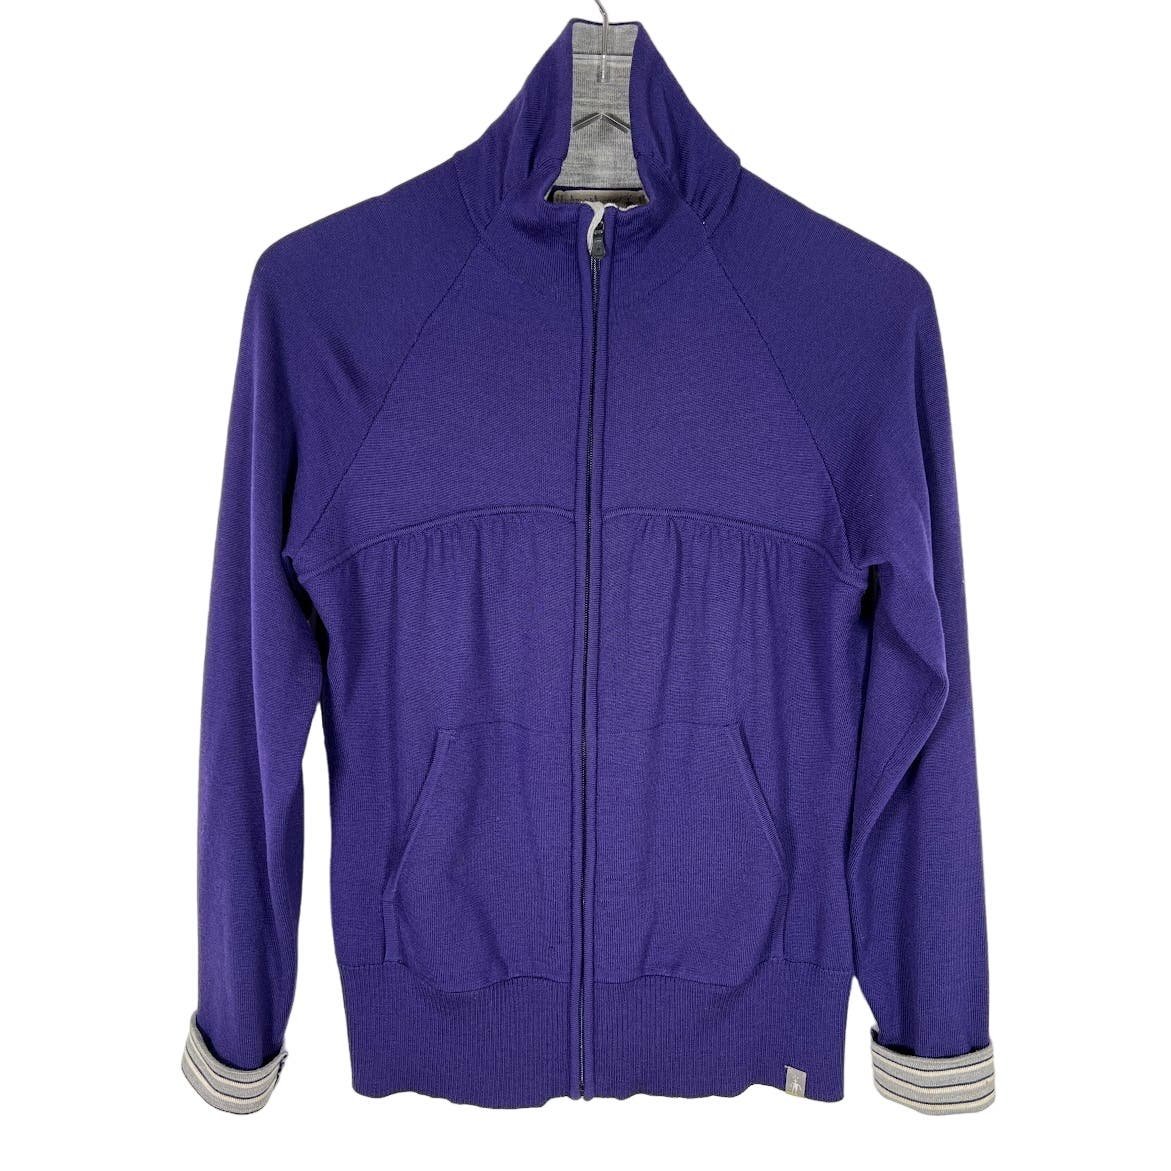 Smartwool Women´s 100% Merino Wool Full Zip Sweater Jacket M Purple Long Sleeve dKSQJTxHB